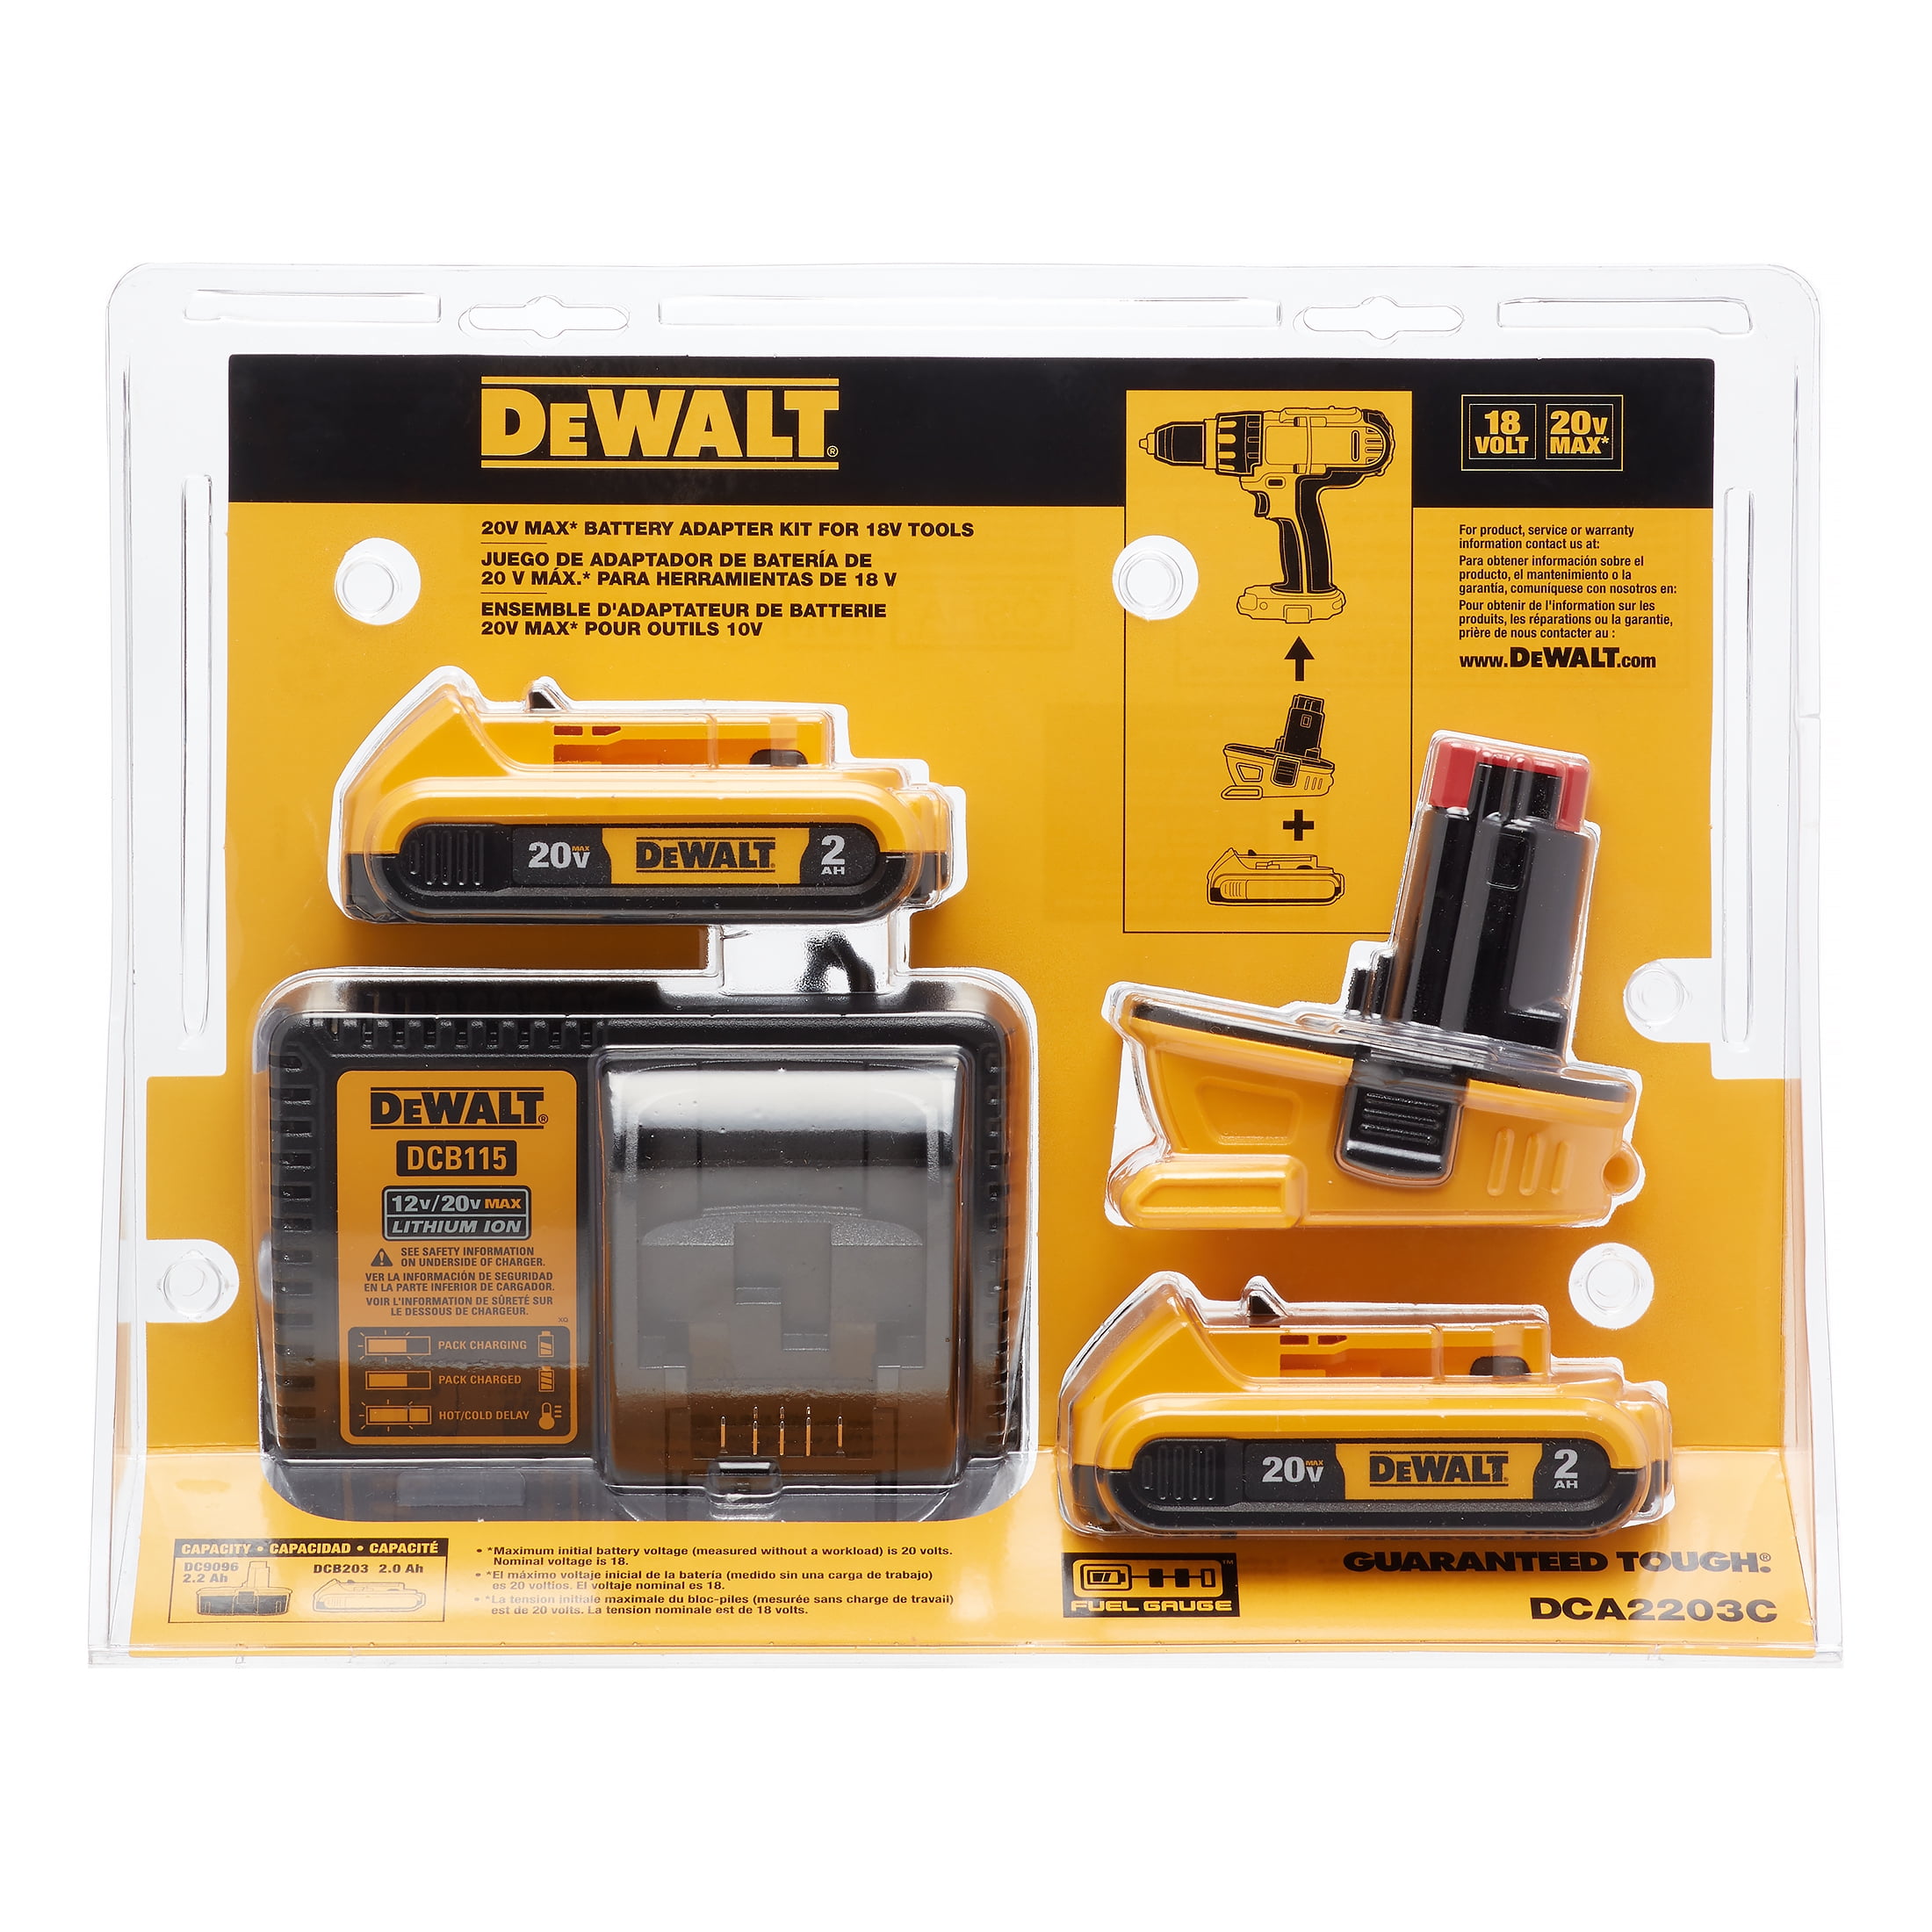 kulhydrat Svække Recept DeWalt 20V MAX* Battery Adapter Kit for 18V Tools (2-Pack) - Walmart.com